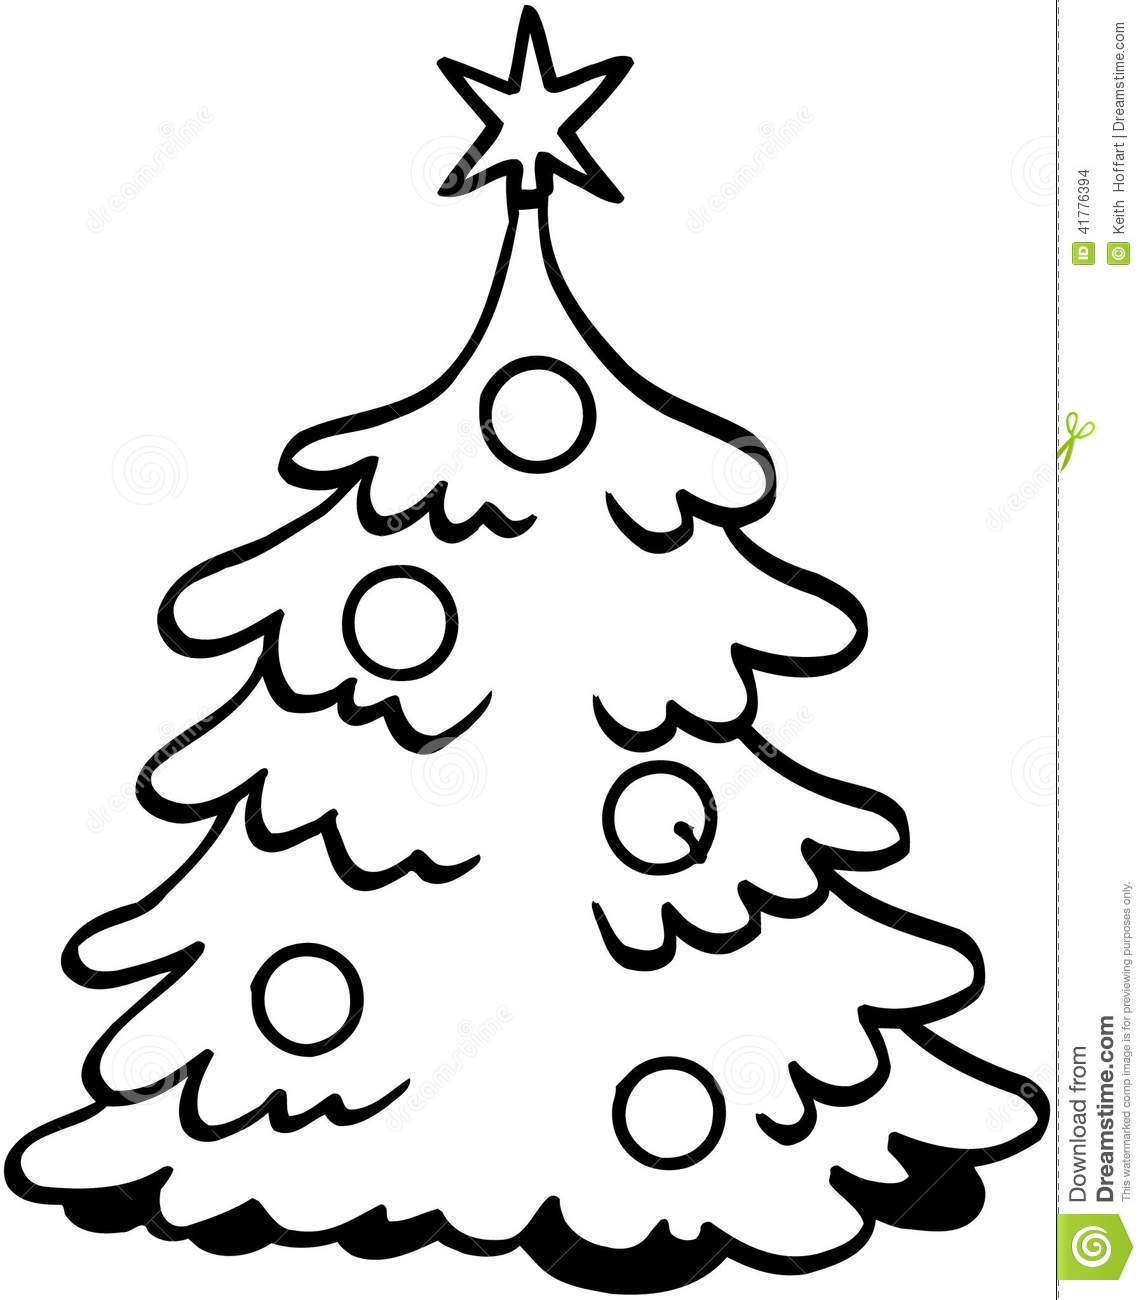 Vector Cartoon Christmas Trees